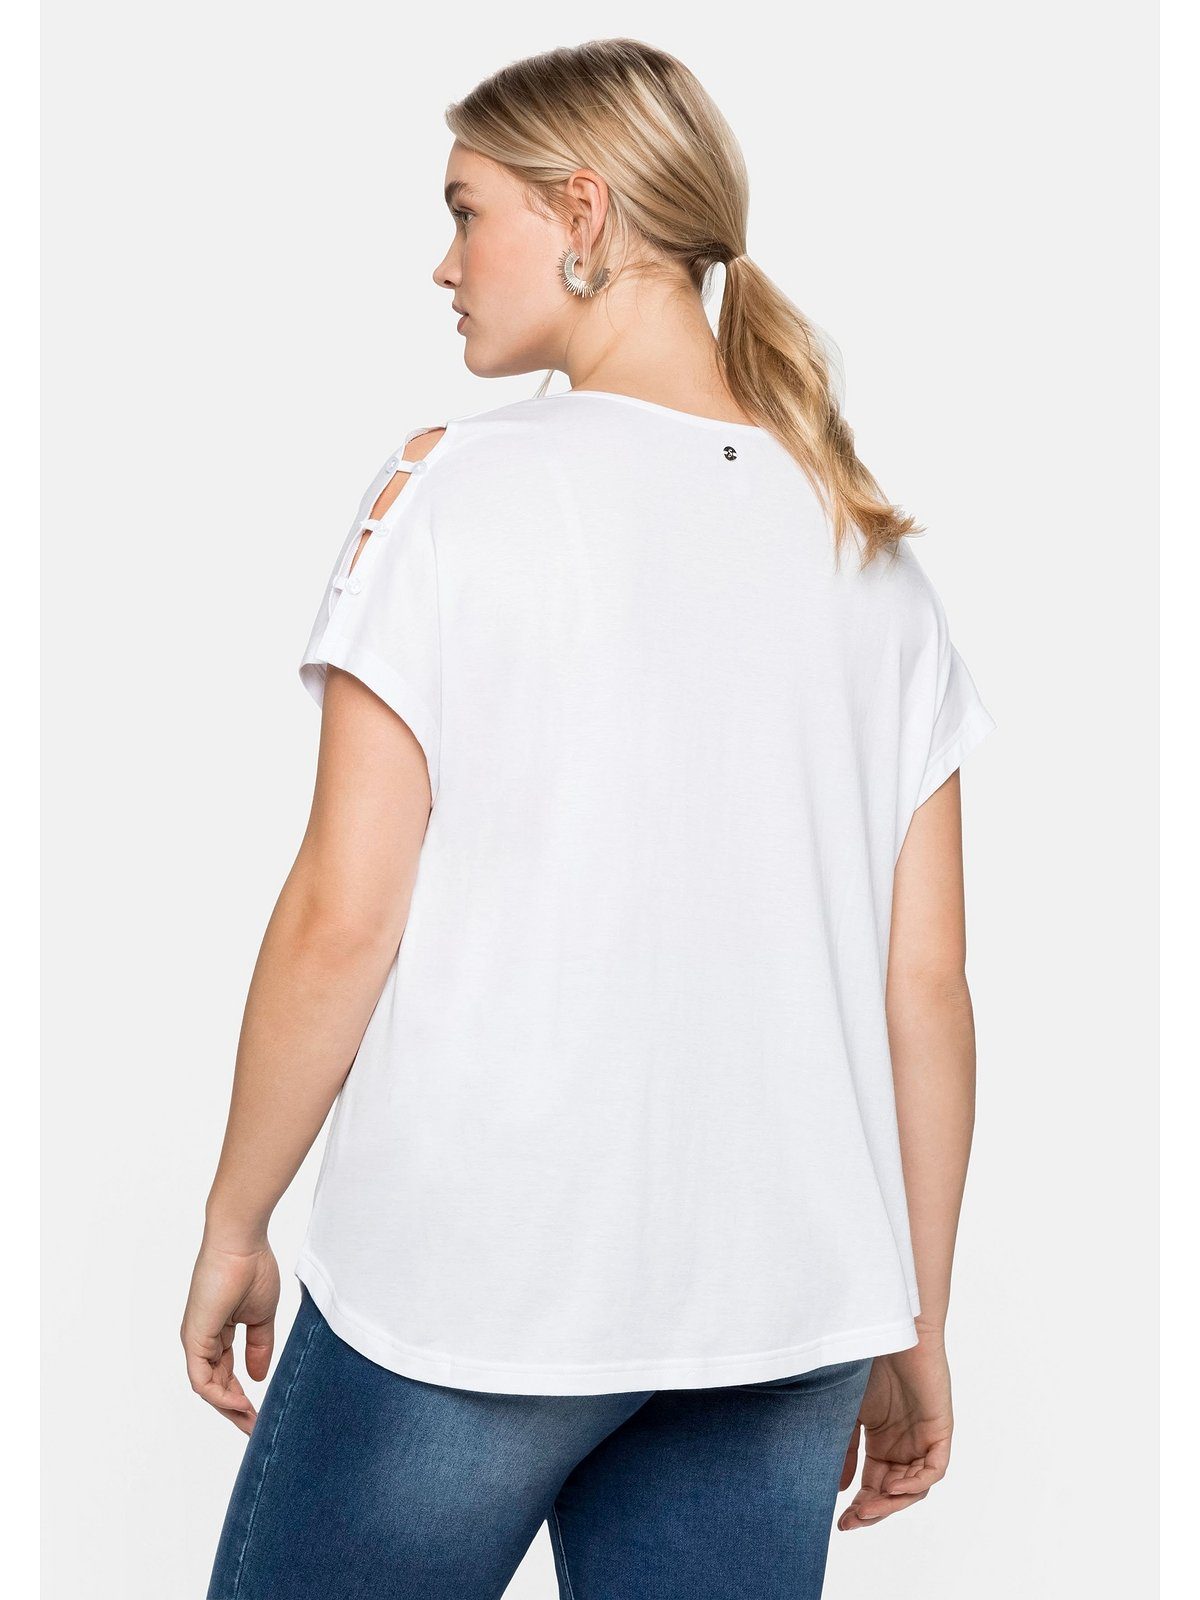 offener A-Linie T-Shirt in weiß Schulterpartie, Größen Große leichter mit Sheego